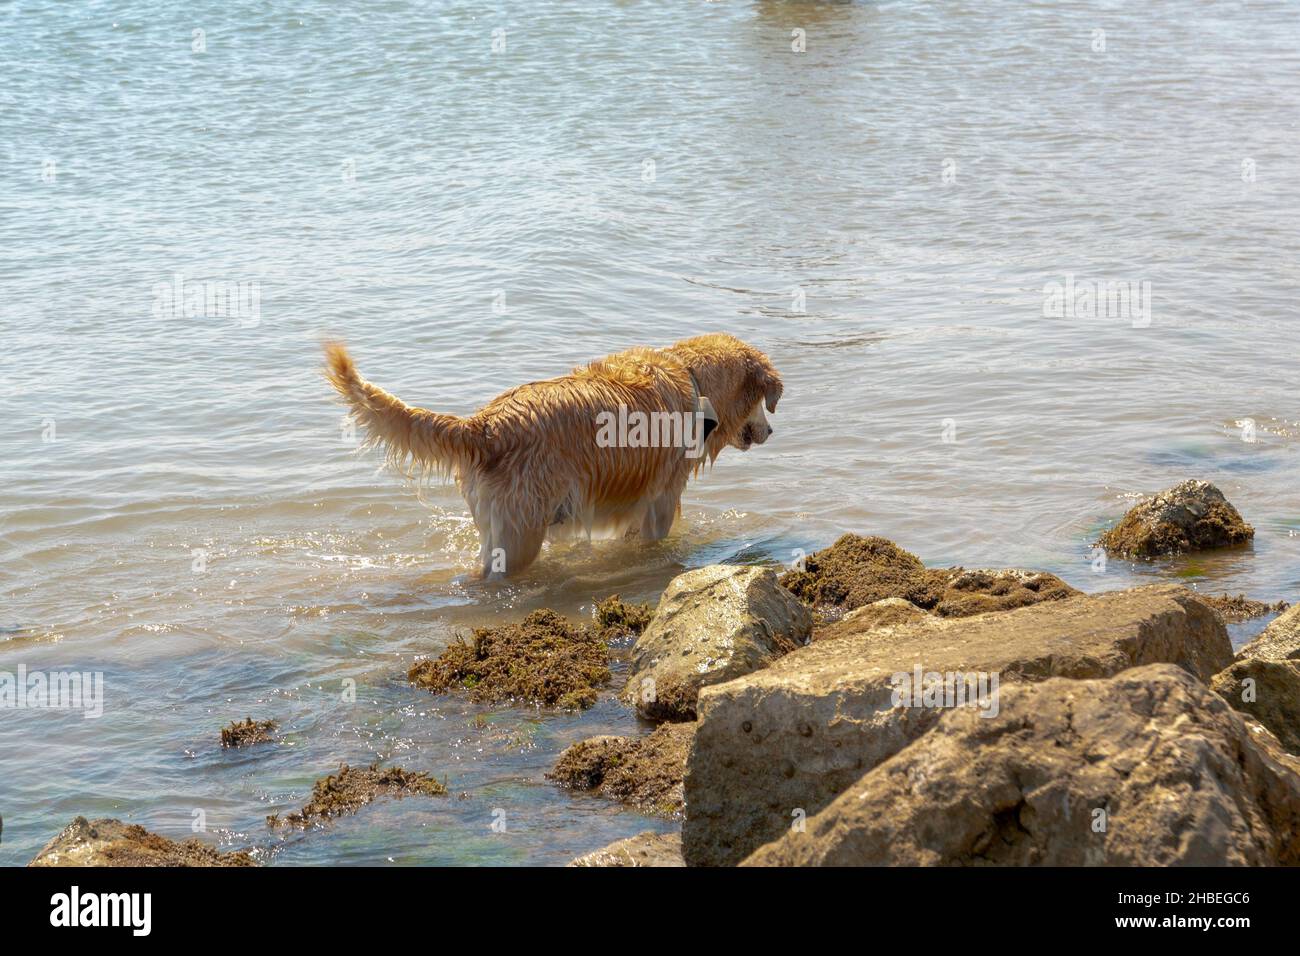 Cane al mare divertirsi in acqua vicino alle rocce Foto Stock